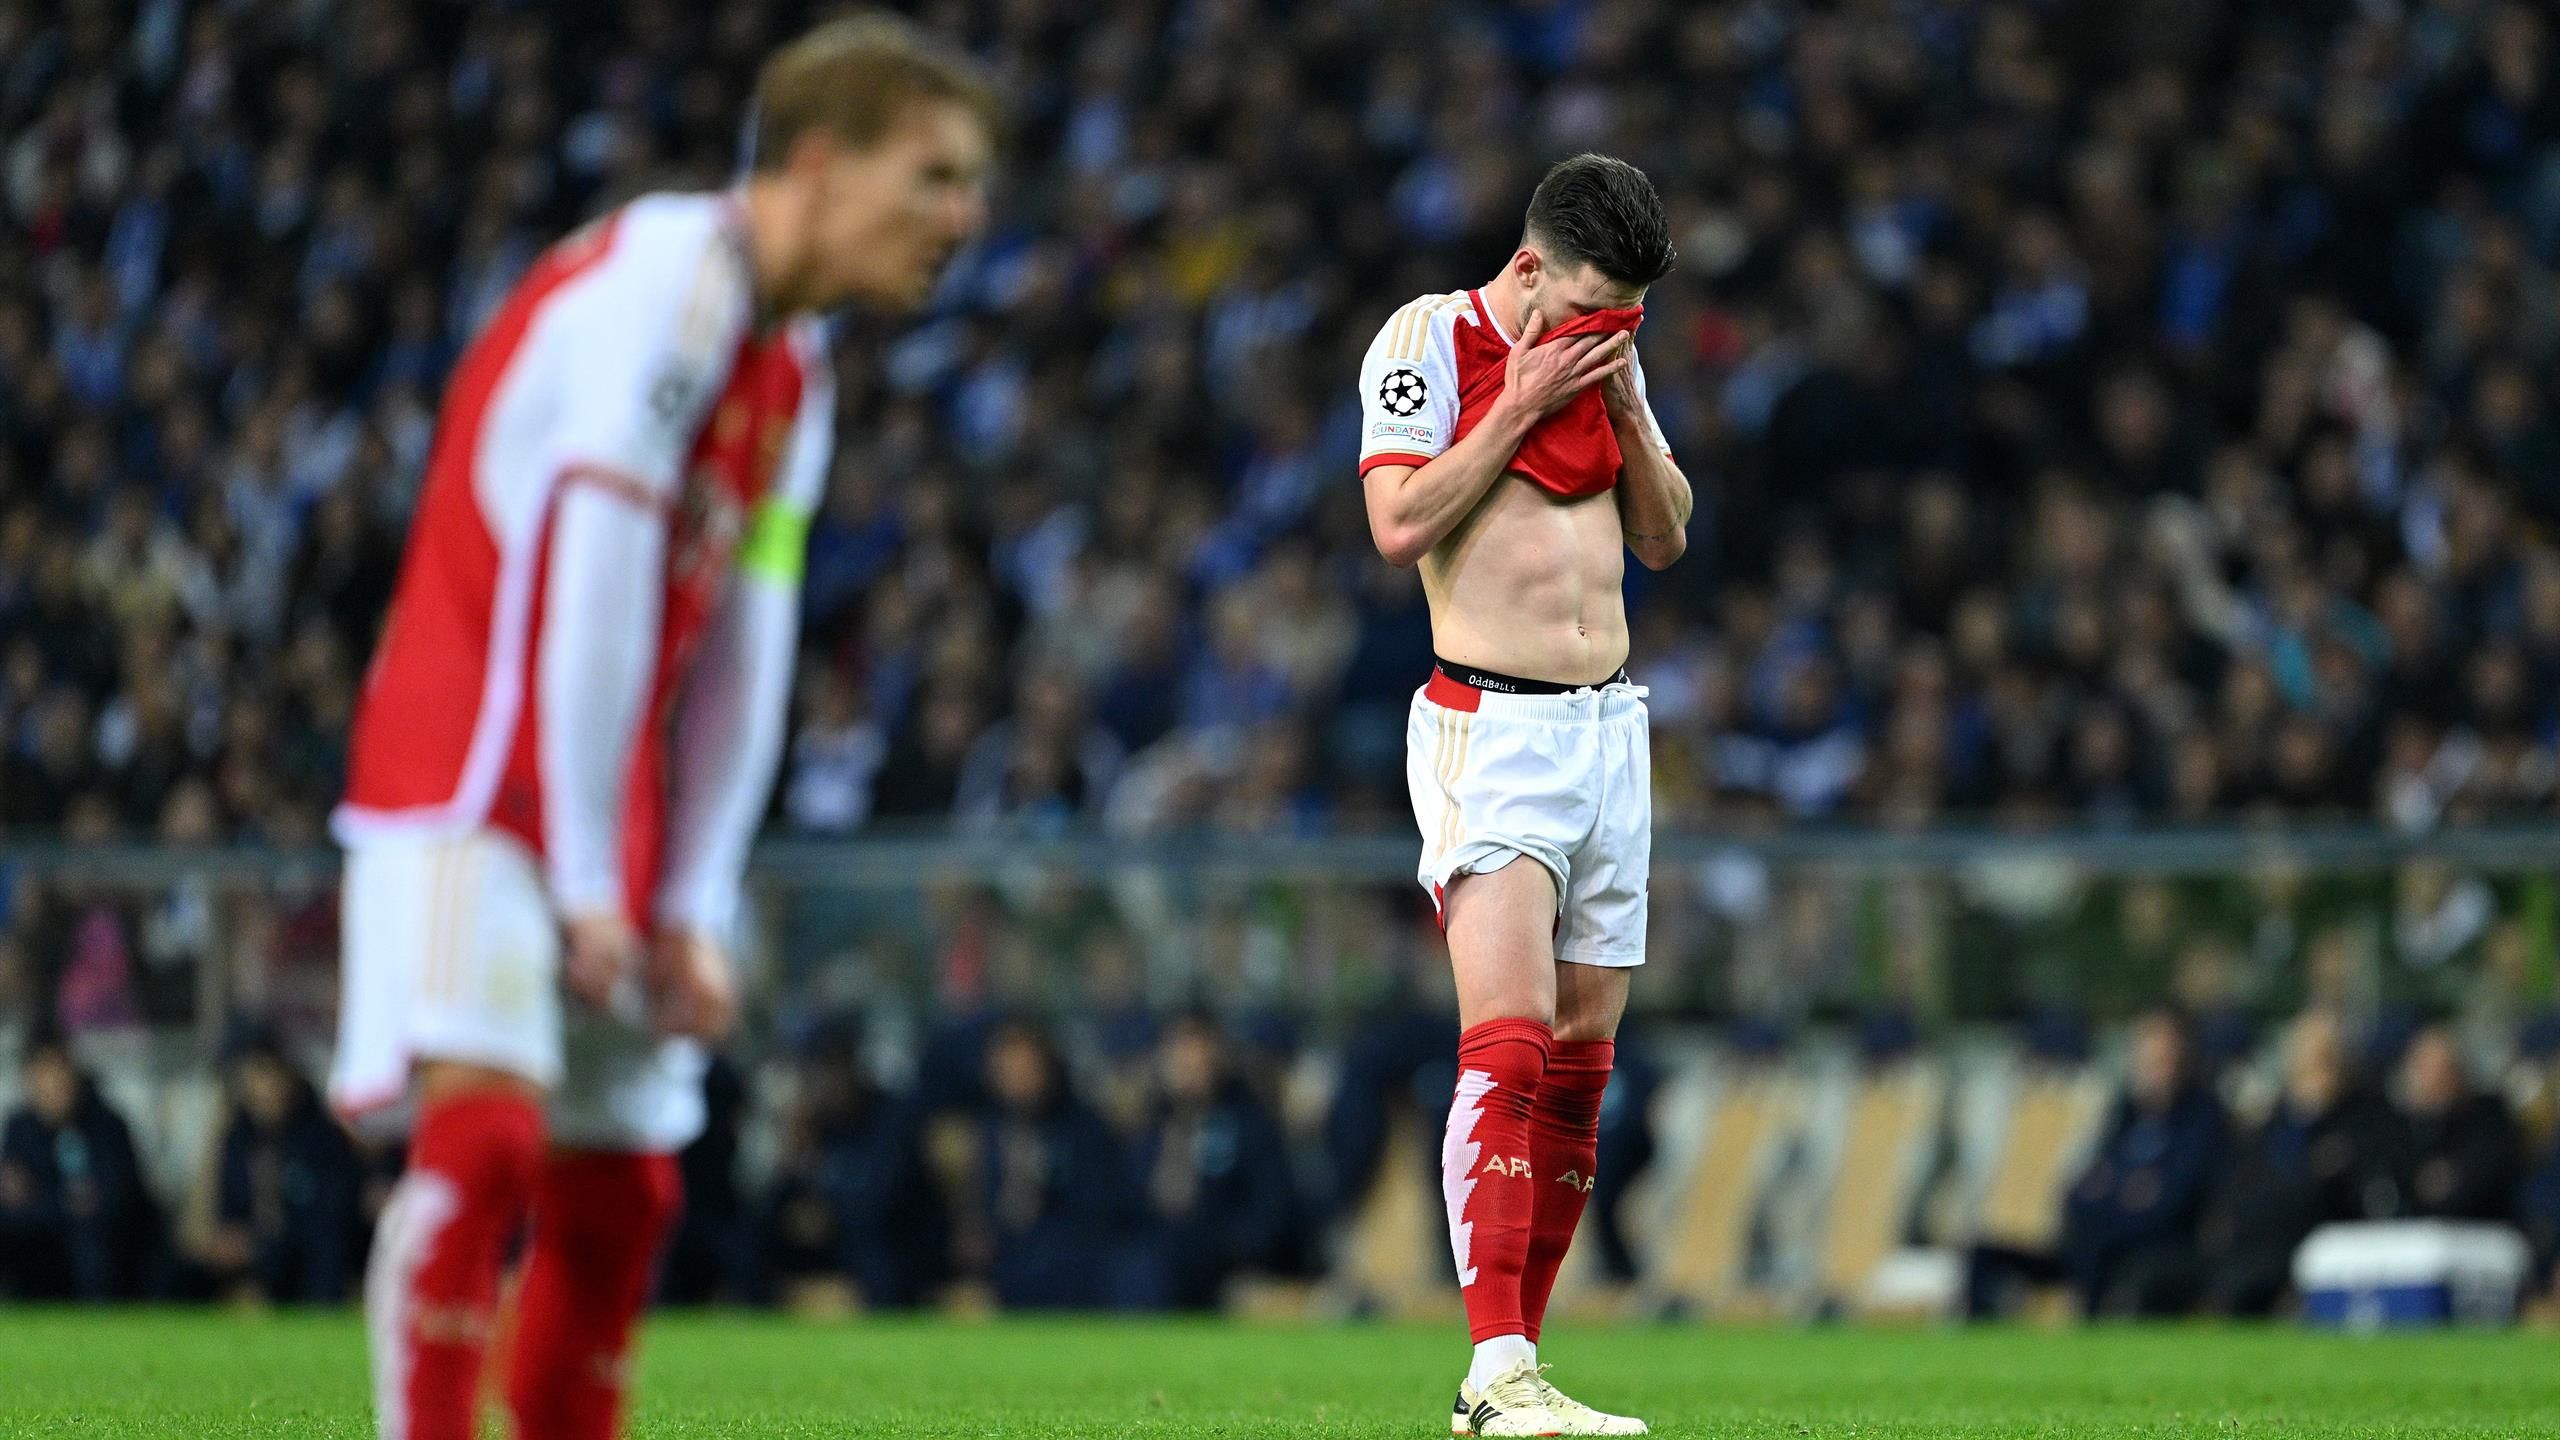 Champions League – La sconfitta dell'Arsenal contro il Porto: “Un vero calcio nei denti” secondo la Rice